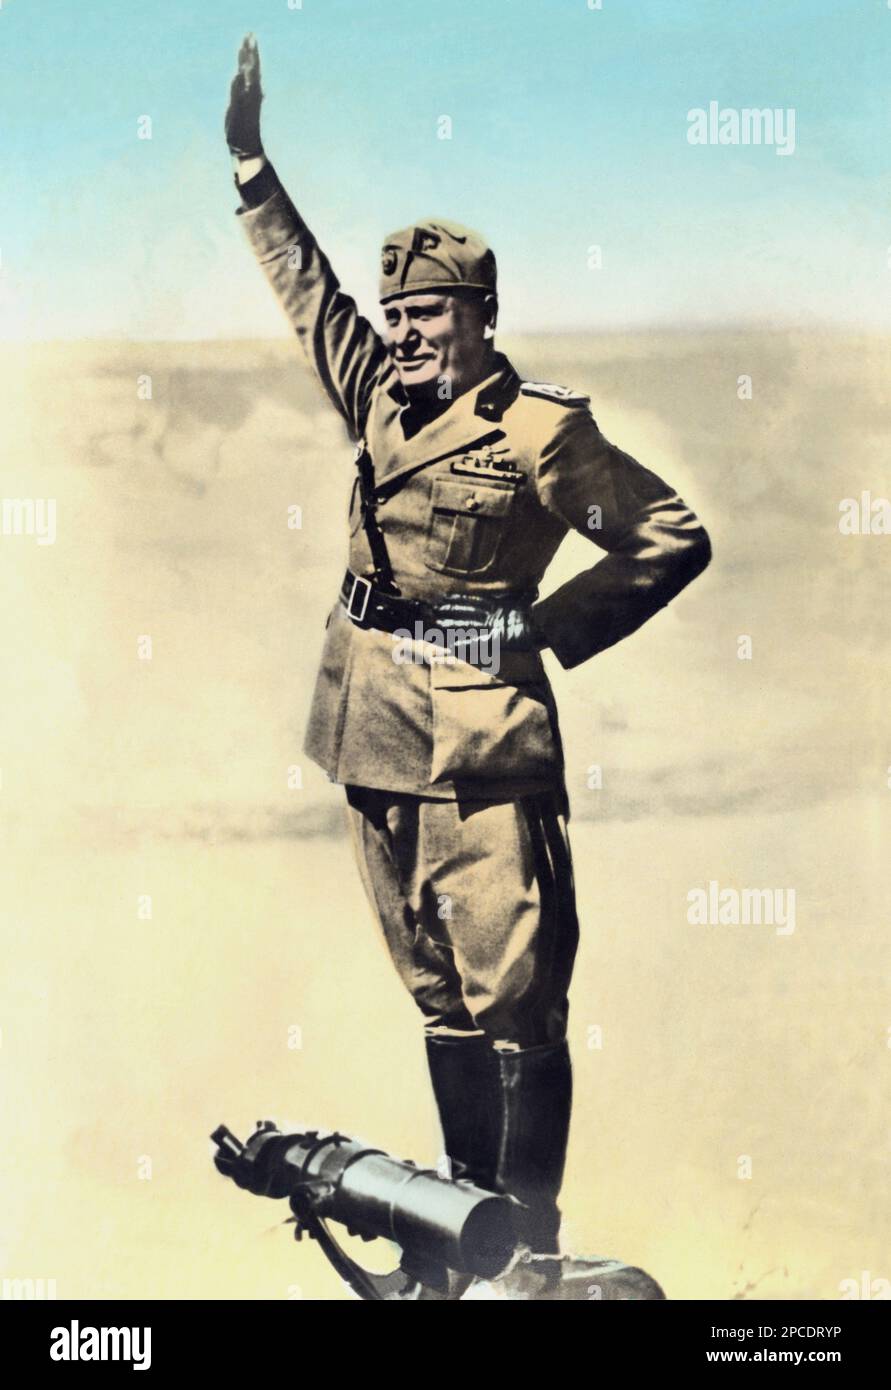 Ca. 1940 , Italien : der italienische Faschist Duce BENITO MUSSOLINI . Das gleiche Foto, das auf dem Mussolini-Grab in san Cassiano di Predappio gezeigt wurde, Forlì - ritratto - Portrait - POLITICA - POLITICO - ITALIA - POLITIC - Portrait - ITALIEN - FASCISMO - FASCHISMUS - FASCISTA - Militäruniform - divisa - uniforme militare - saluto fascista - stivali - Stiefel - Zweiter Weltkrieg - SECONDA GUERRA MONDIALE - 2. - COLOSSEO - ROM - ITALIA - Guanti - Handschuhe --- Archivio GBB Stockfoto